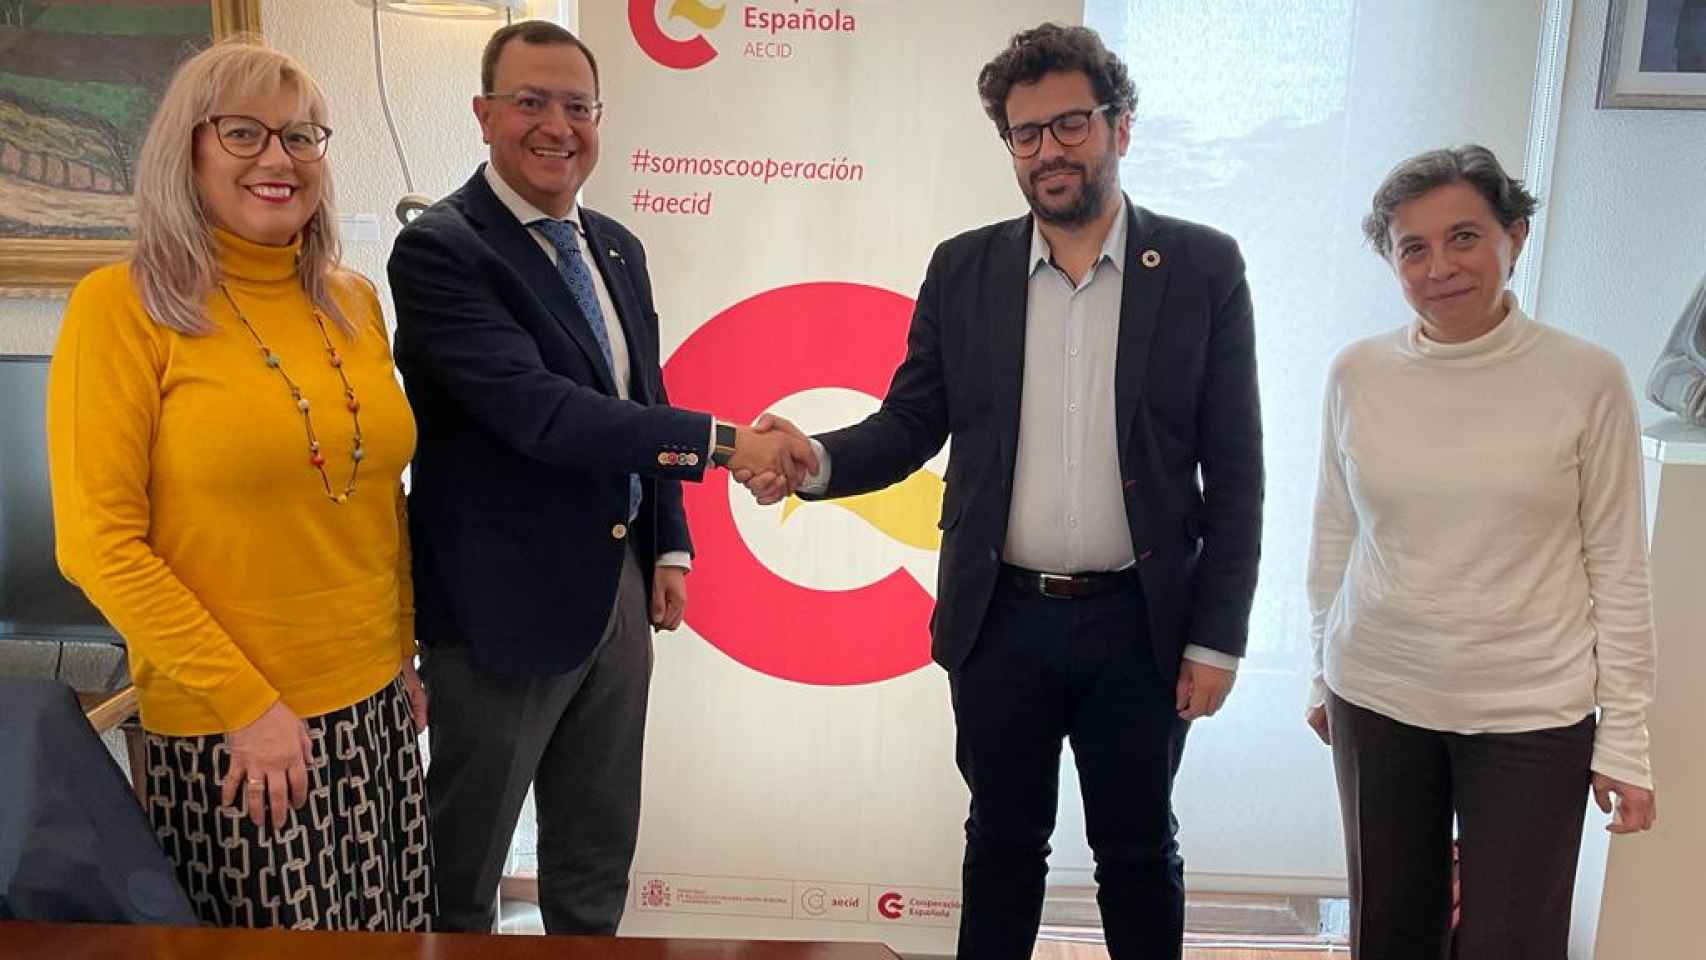 Reunión de la Junta de Castilla y León con la Aecid, Agencia Española de Cooperación Internacional y Desarrollo